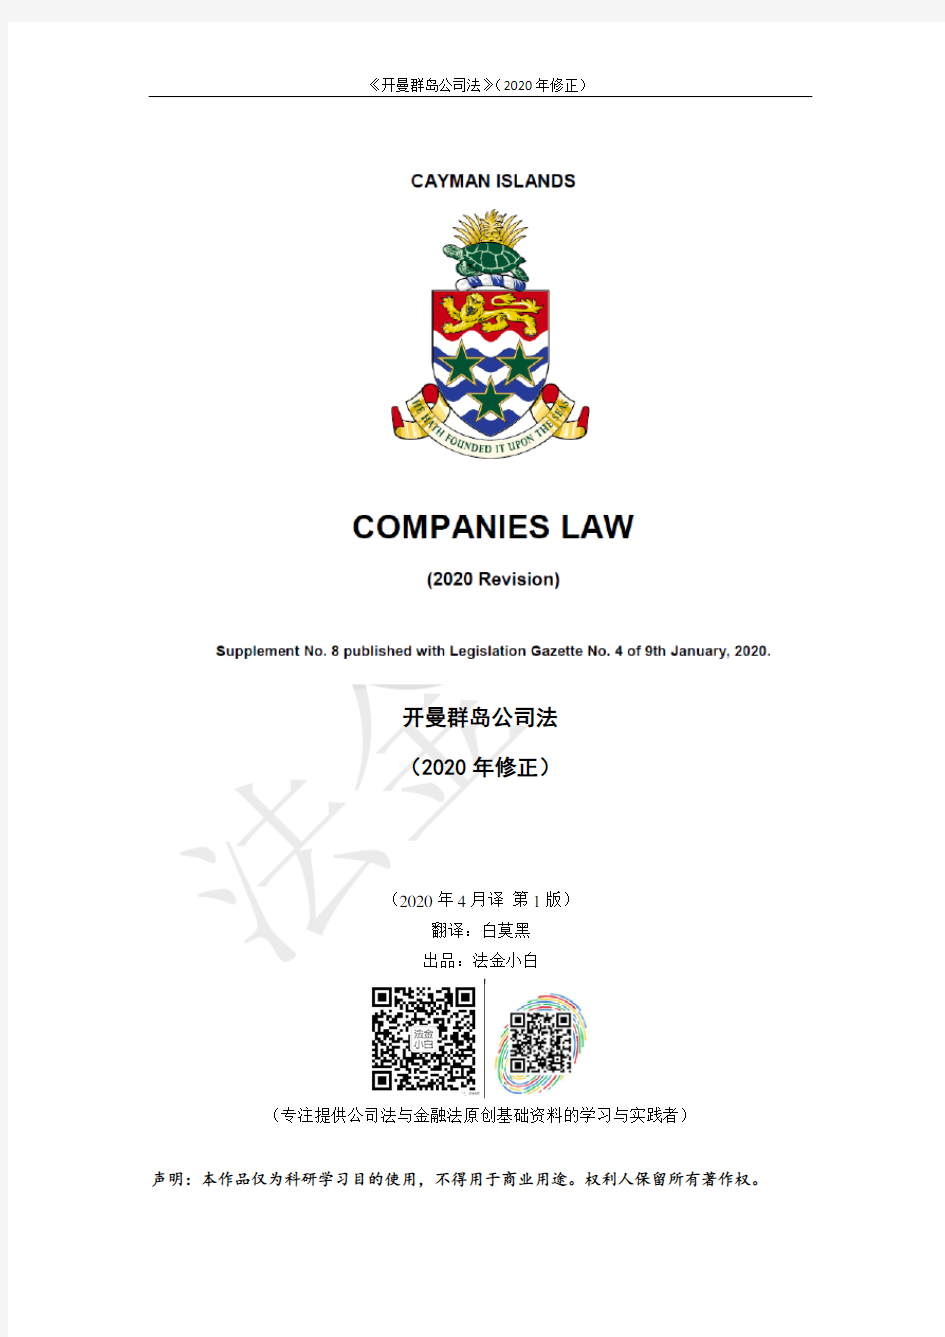 开曼群岛公司法(2020修正)_2020年4月_第1版